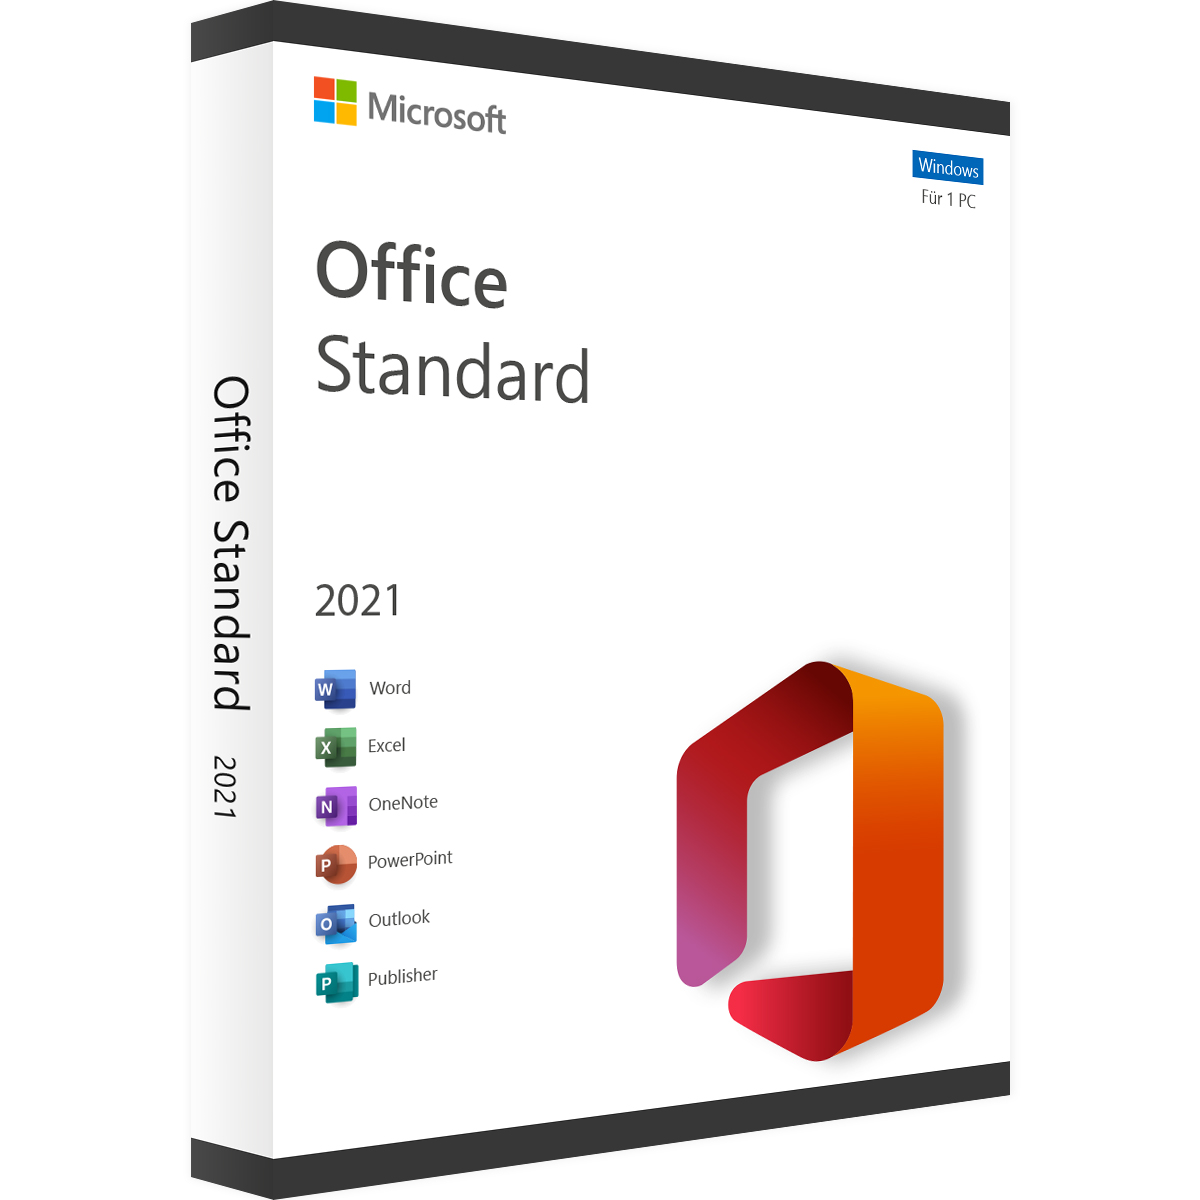 Microsoft Office 2021 Standard - Produktschlüssel - Vollversion - Sofort-Download - 1 PC von Microsoft